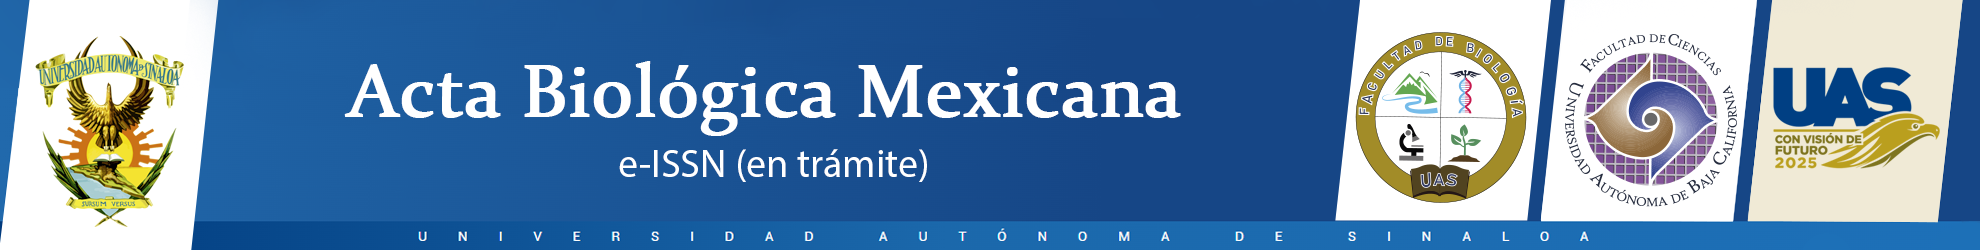 Logo Acta Biológica Mexicana